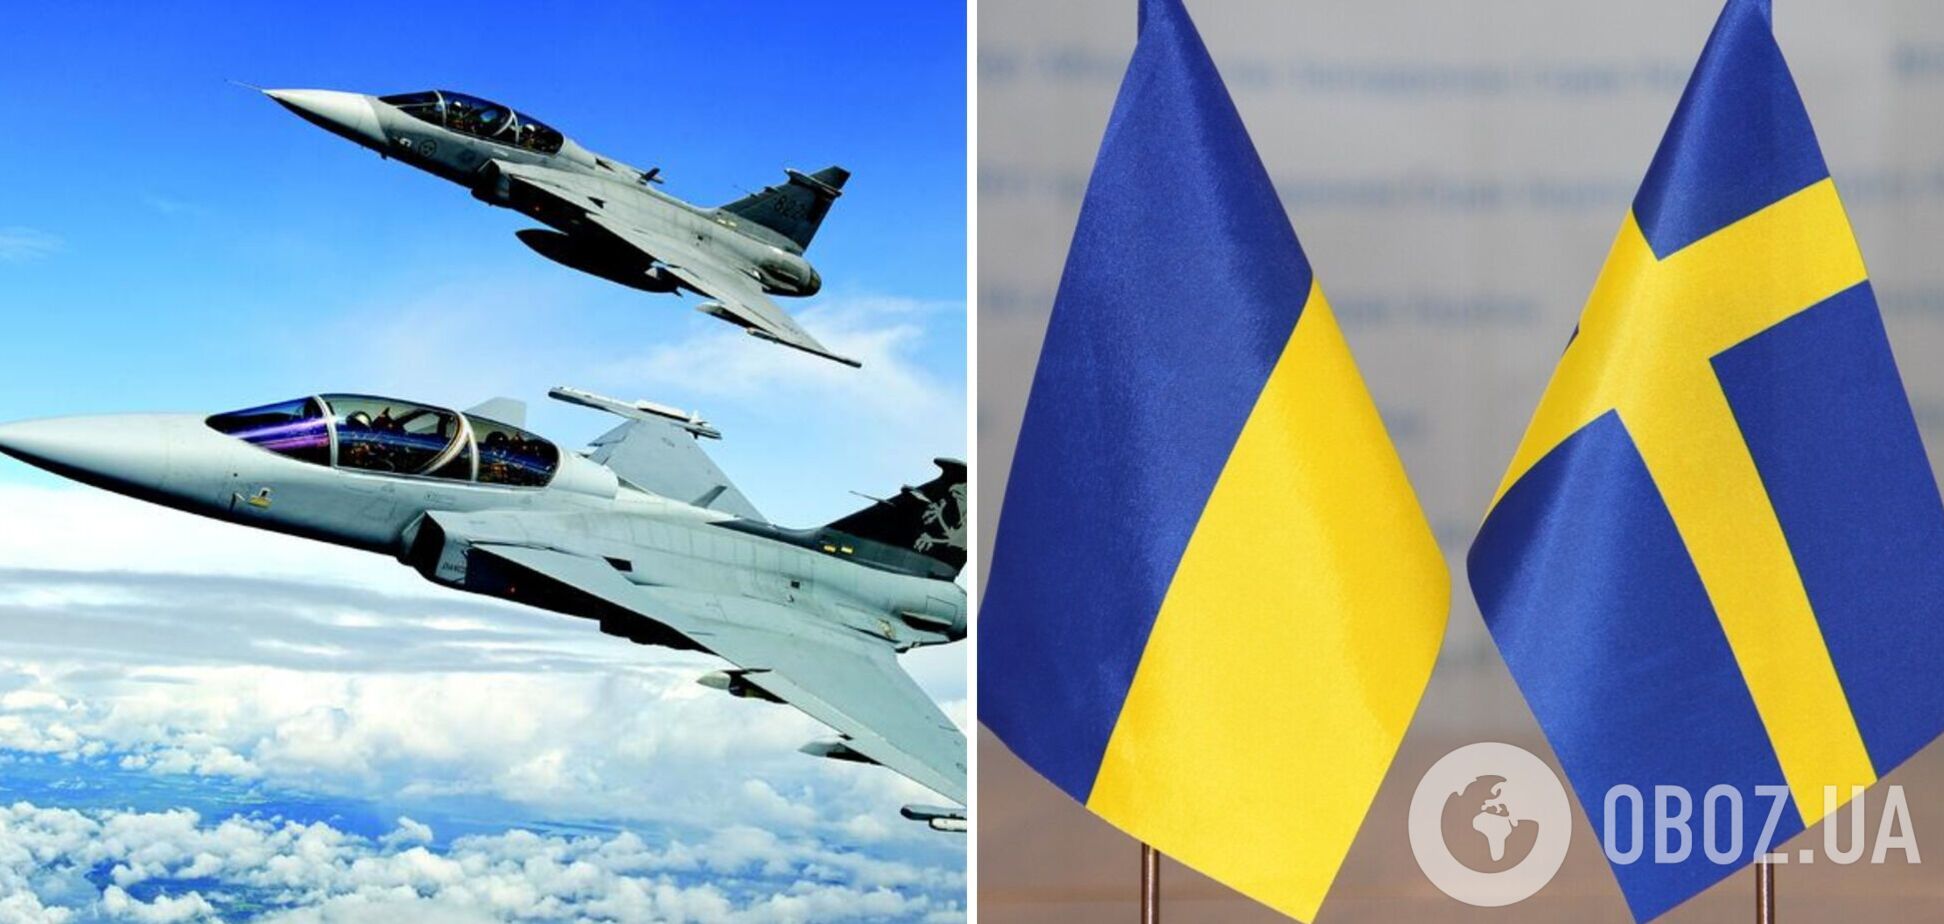 'Ми значно посилюємо підтримку України': в Швеції відповіли, чи можуть надати винищувачі Gripen, і назвали пріоритети в допомозі